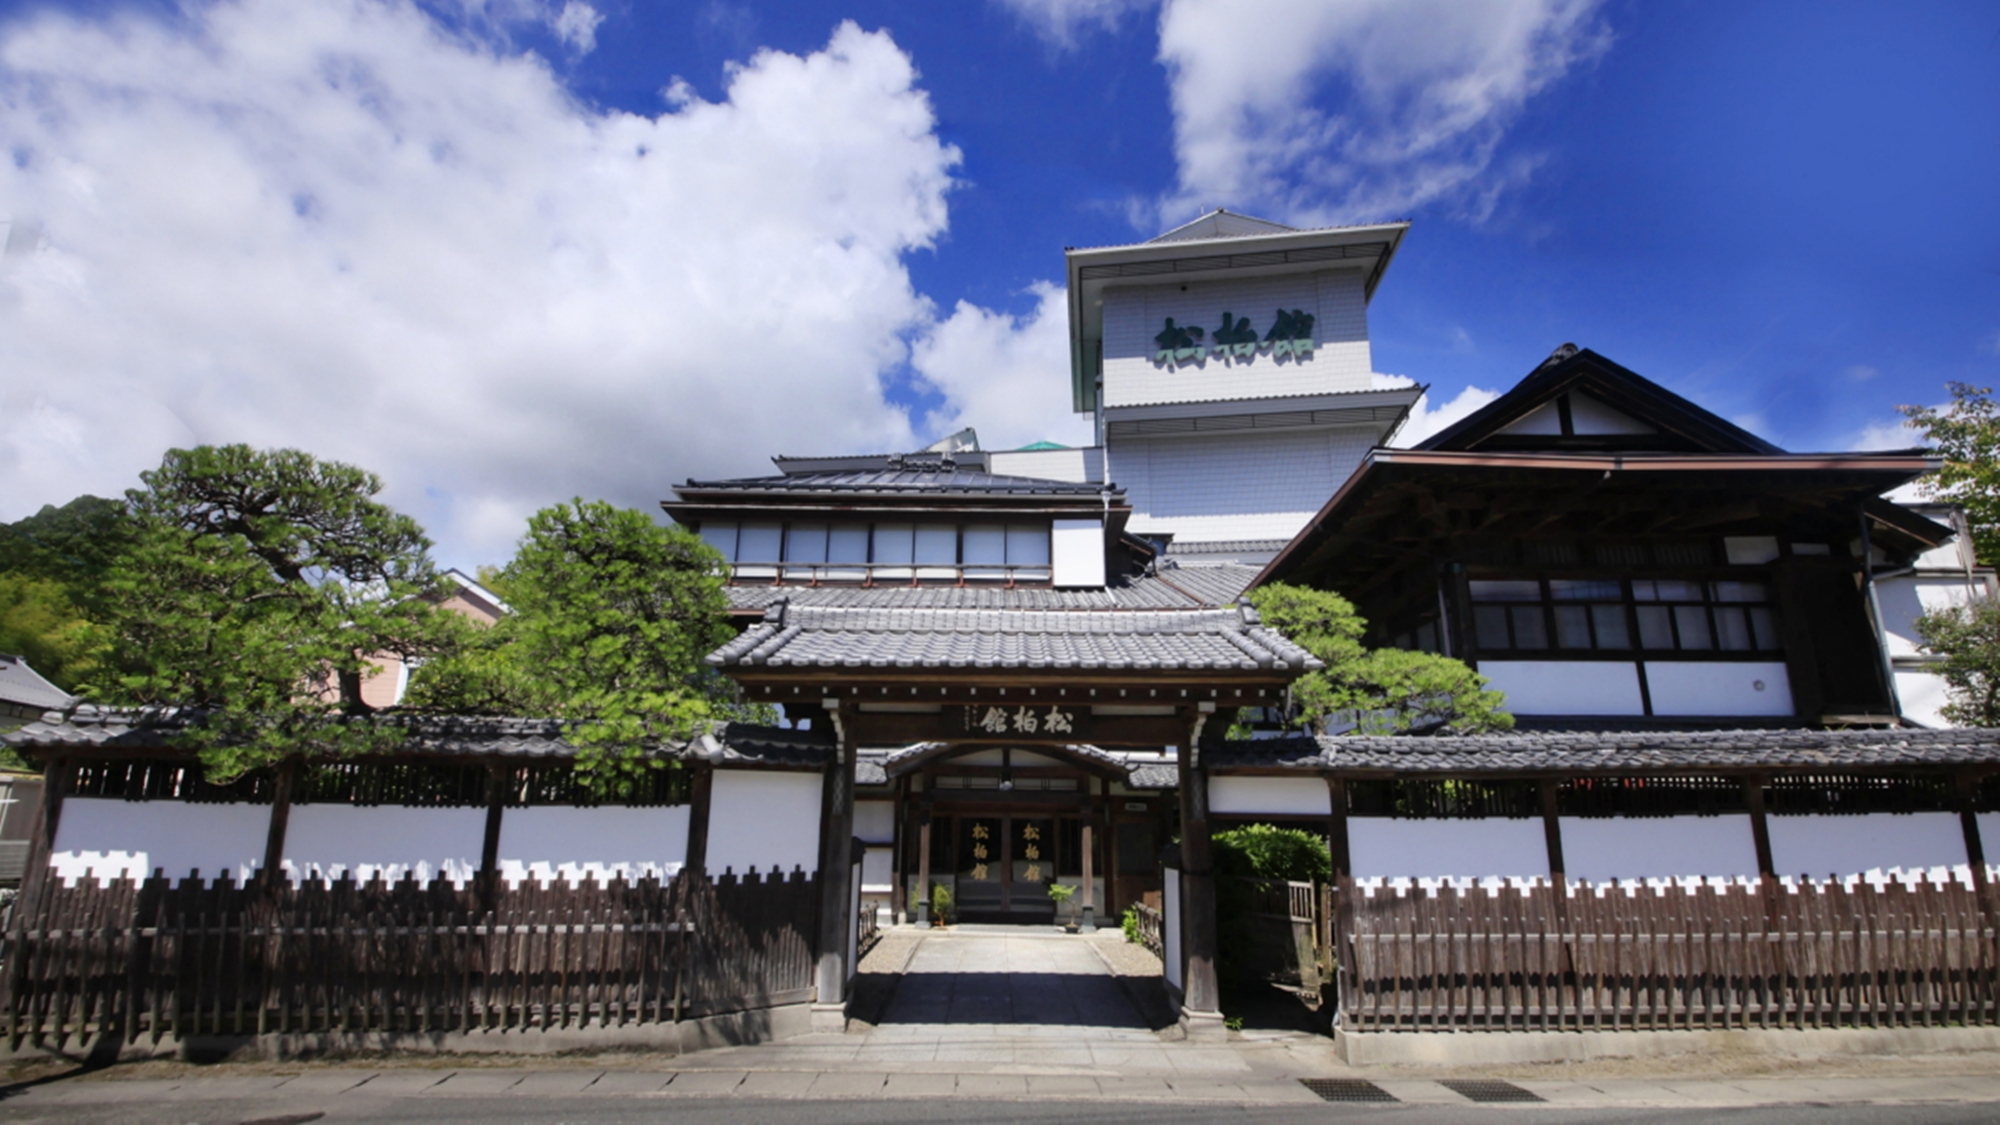 いわき湯本温泉に学生旅行でいくのにアクセス便利なおススメ温泉宿はありますか？